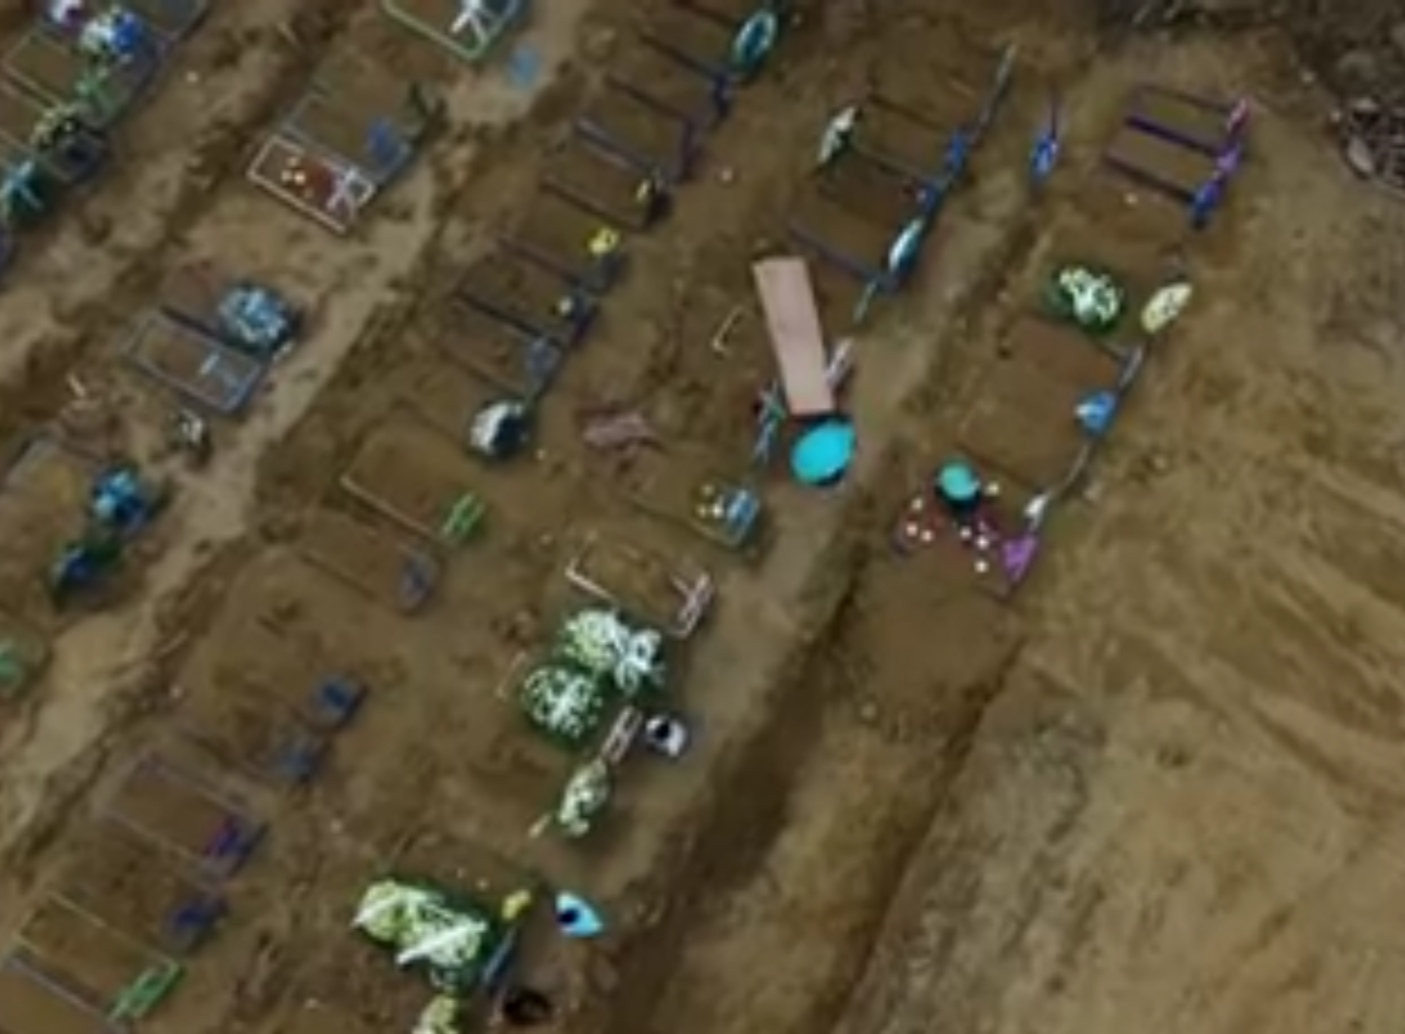 شاهد بالفيديو مقابر جماعية جديدة لضحايا كورونا في البرازيل